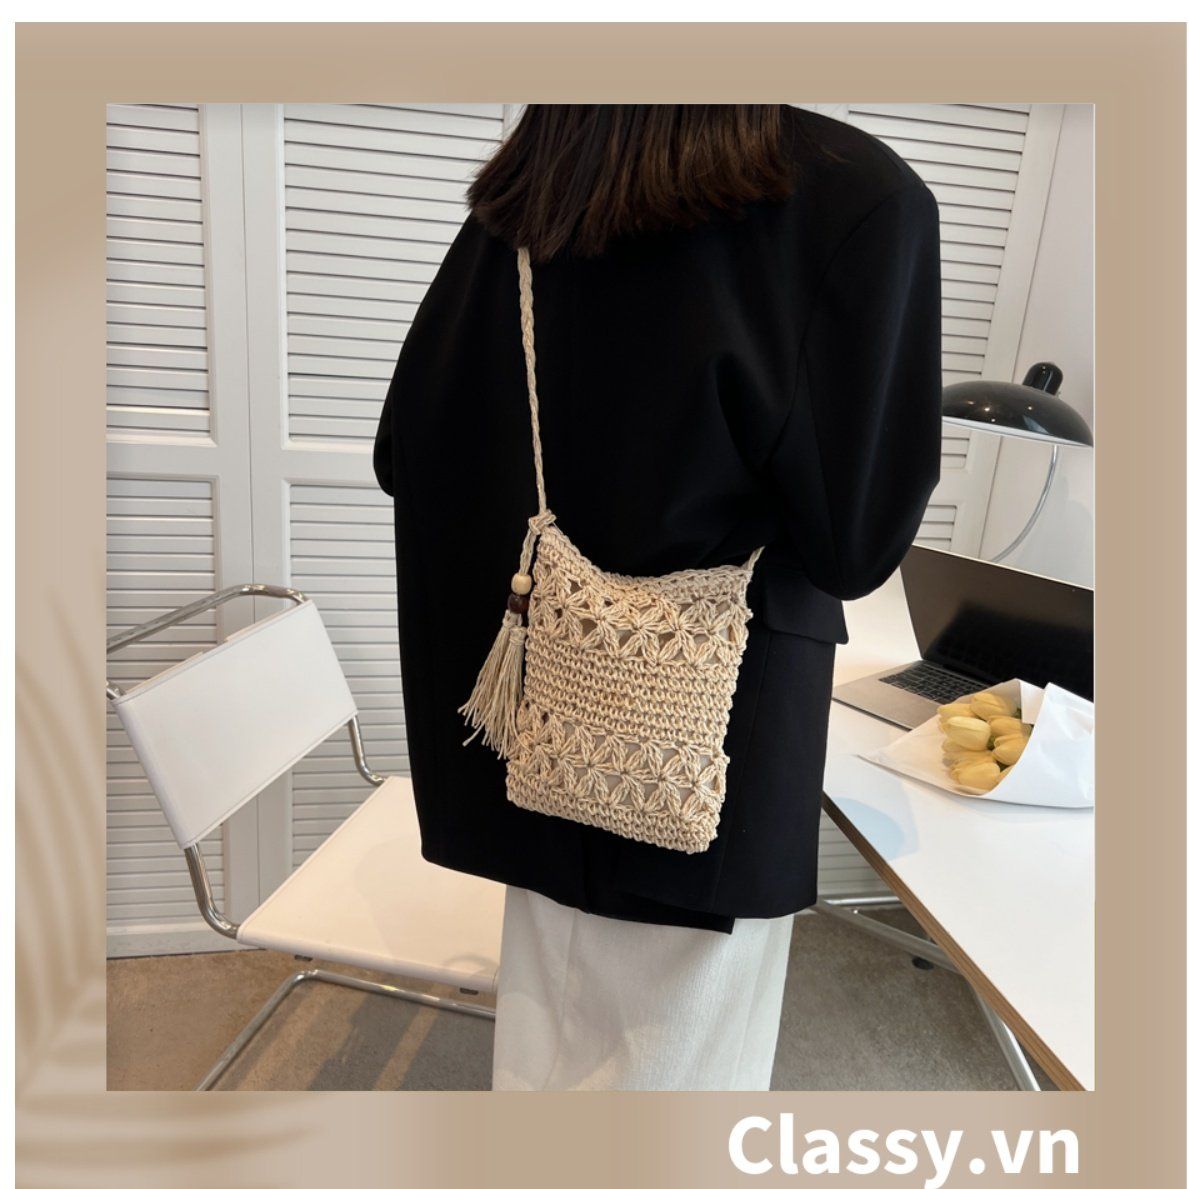  Túi dệt thủ công hình chữ nhật, có lớp lót dày dặn, phong cách hàn quốc dành cho nữ T1130 